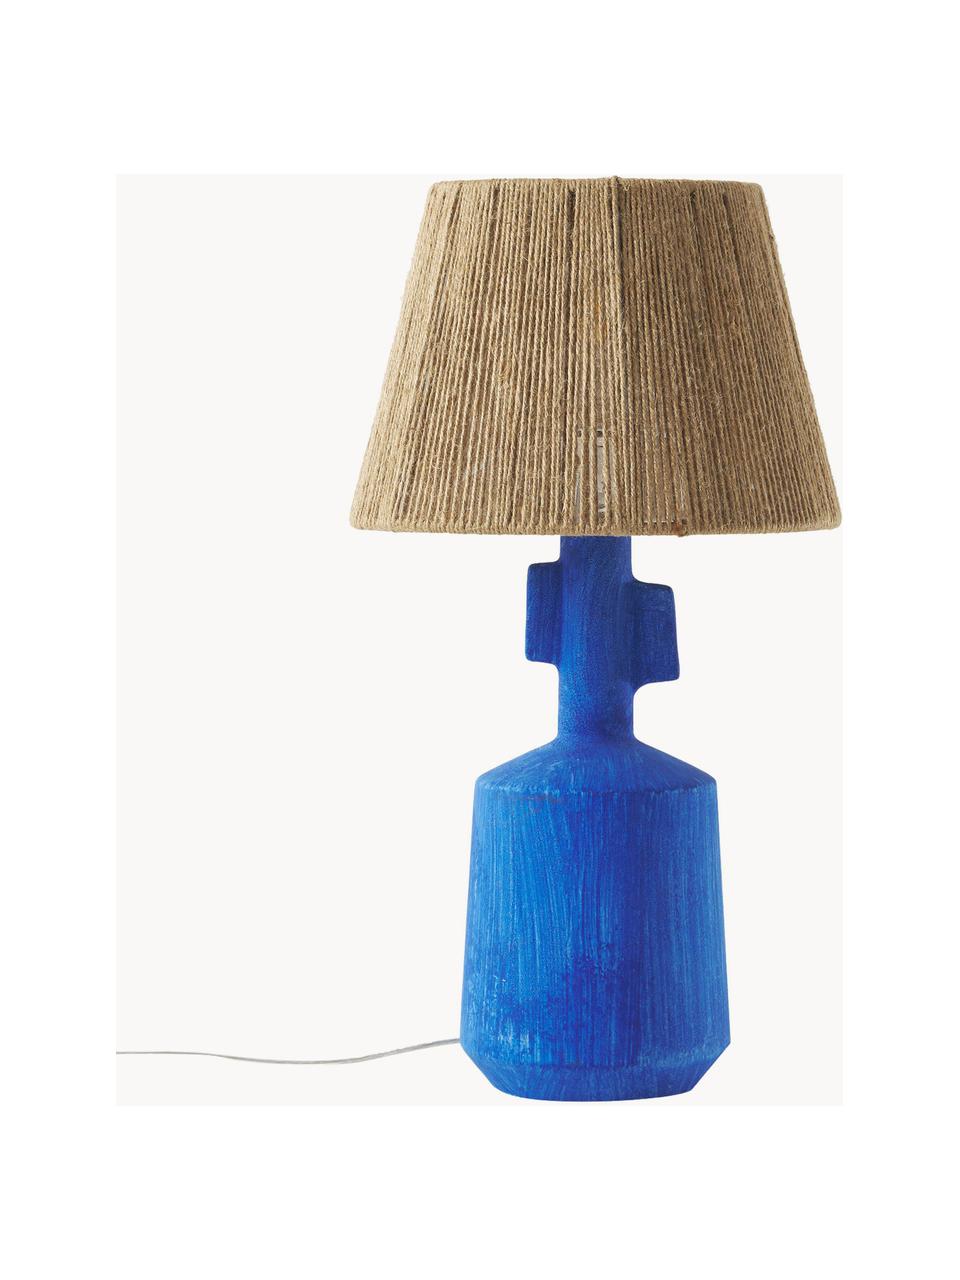 Keramik-Tischlampe Alicia, Lampenschirm: Leinenfäden, Braun, Blau, Ø 26 x H 49 cm